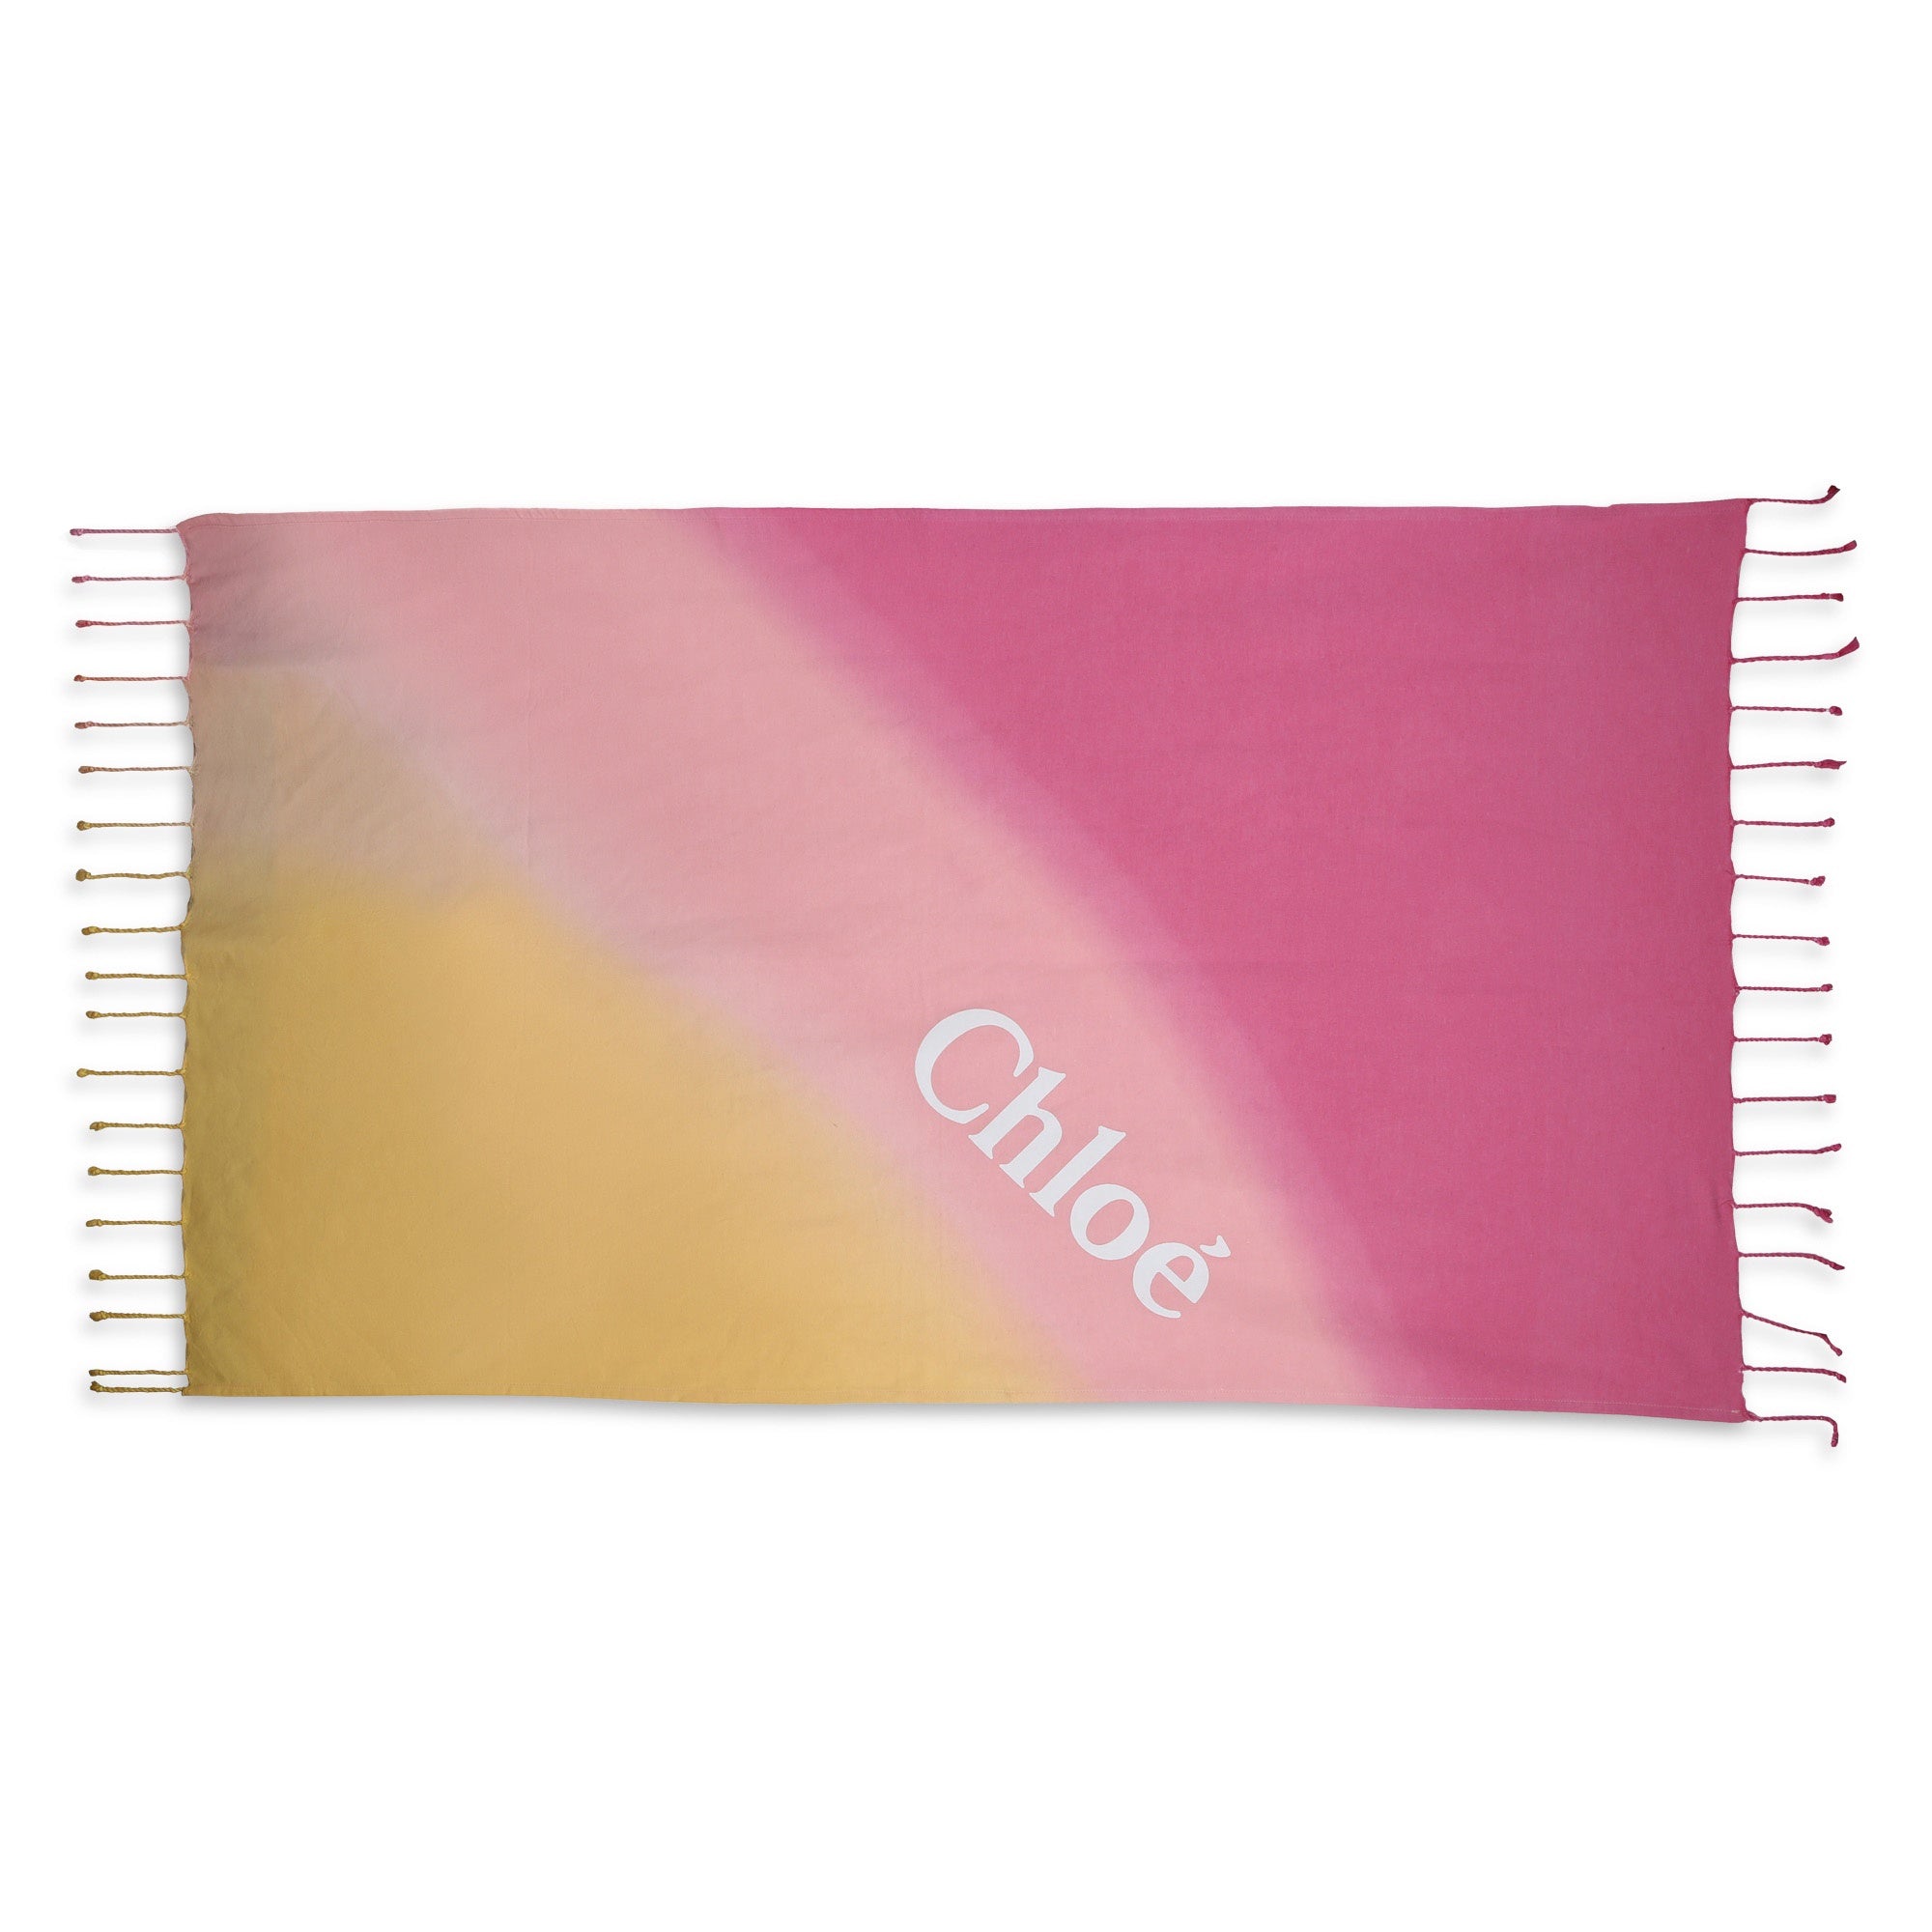 Chloé Beach Towel